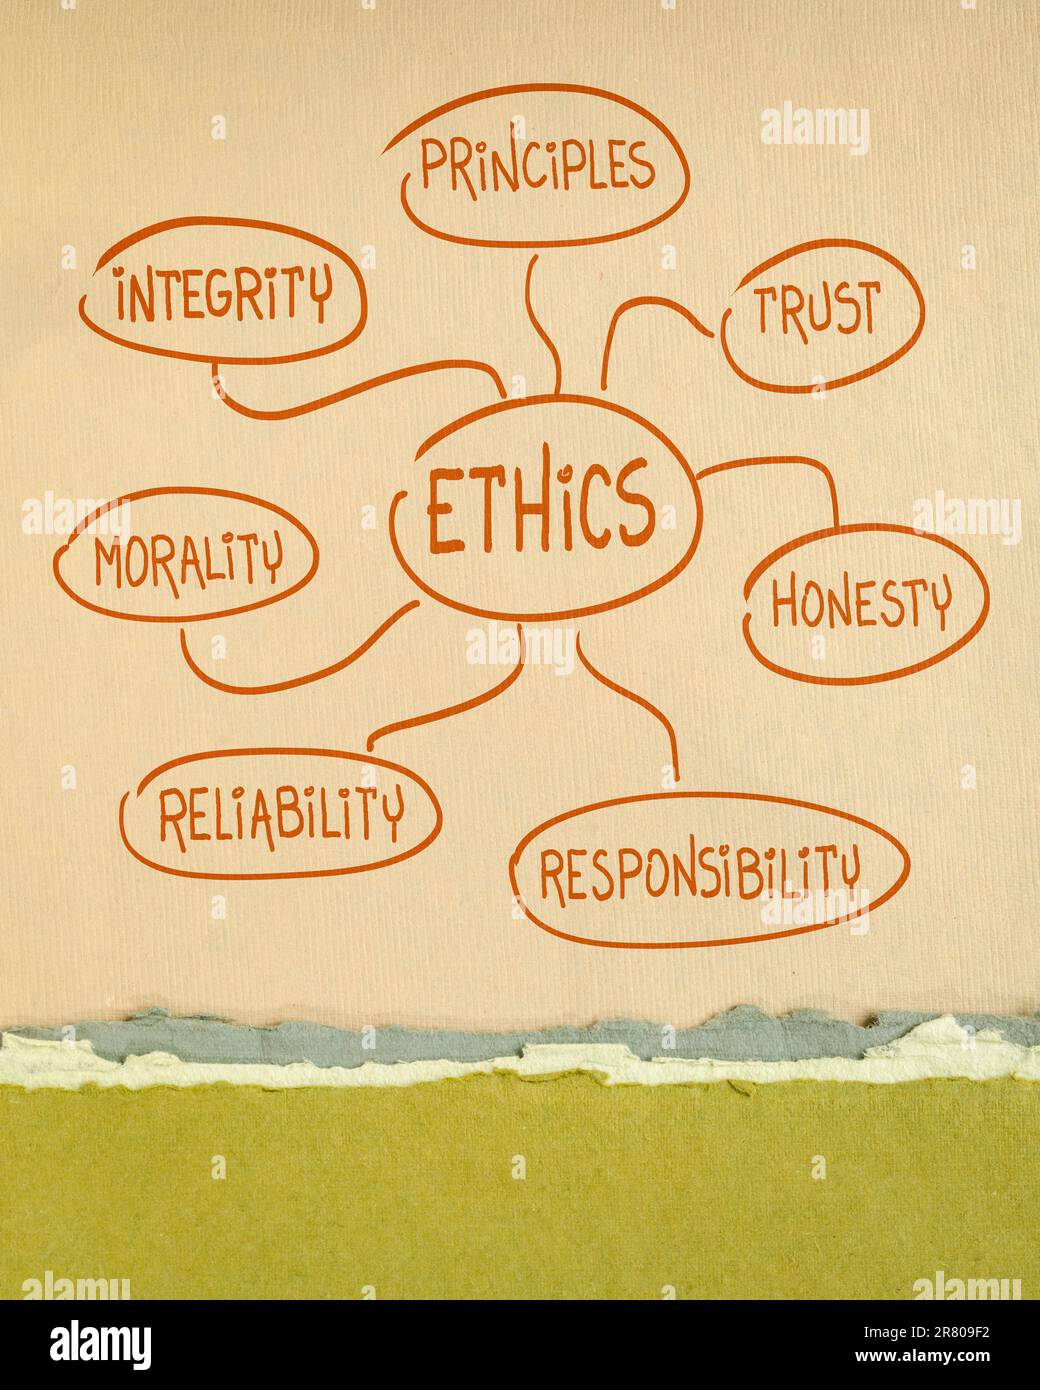 etica, integrità, fiducia, onestà, responsabilità, moralità, affidabilità e principi concetto di mappa mentale - un doodle su carta d'arte Foto Stock